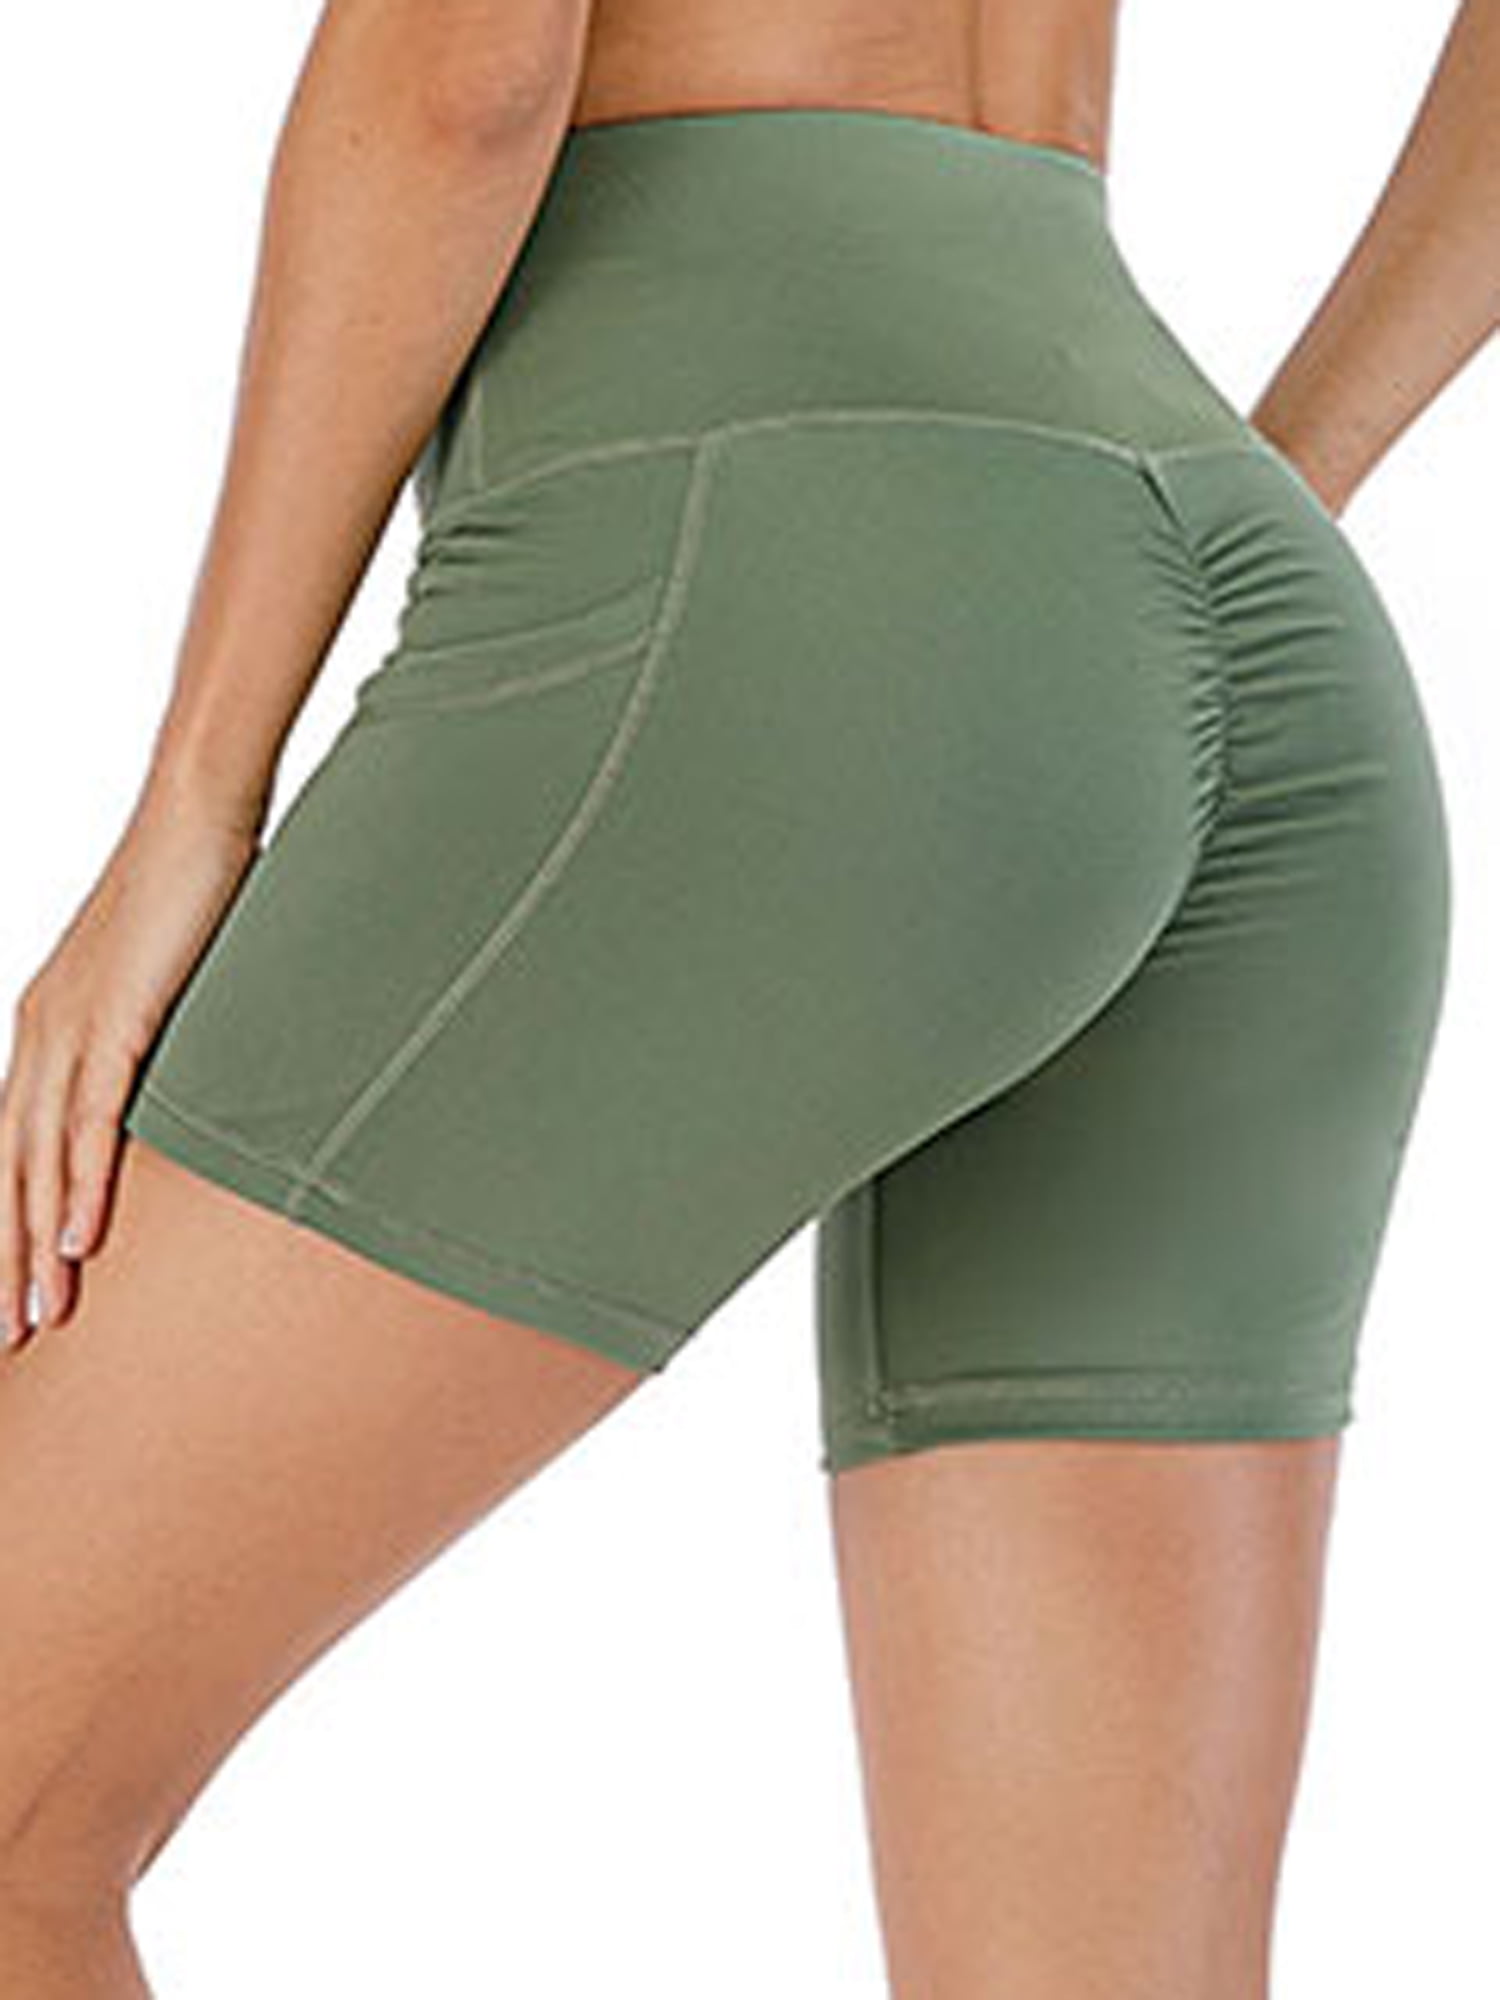 DODOING - DODOING High Waist Workout Butt Lifting Yoga Shorts for Women ...